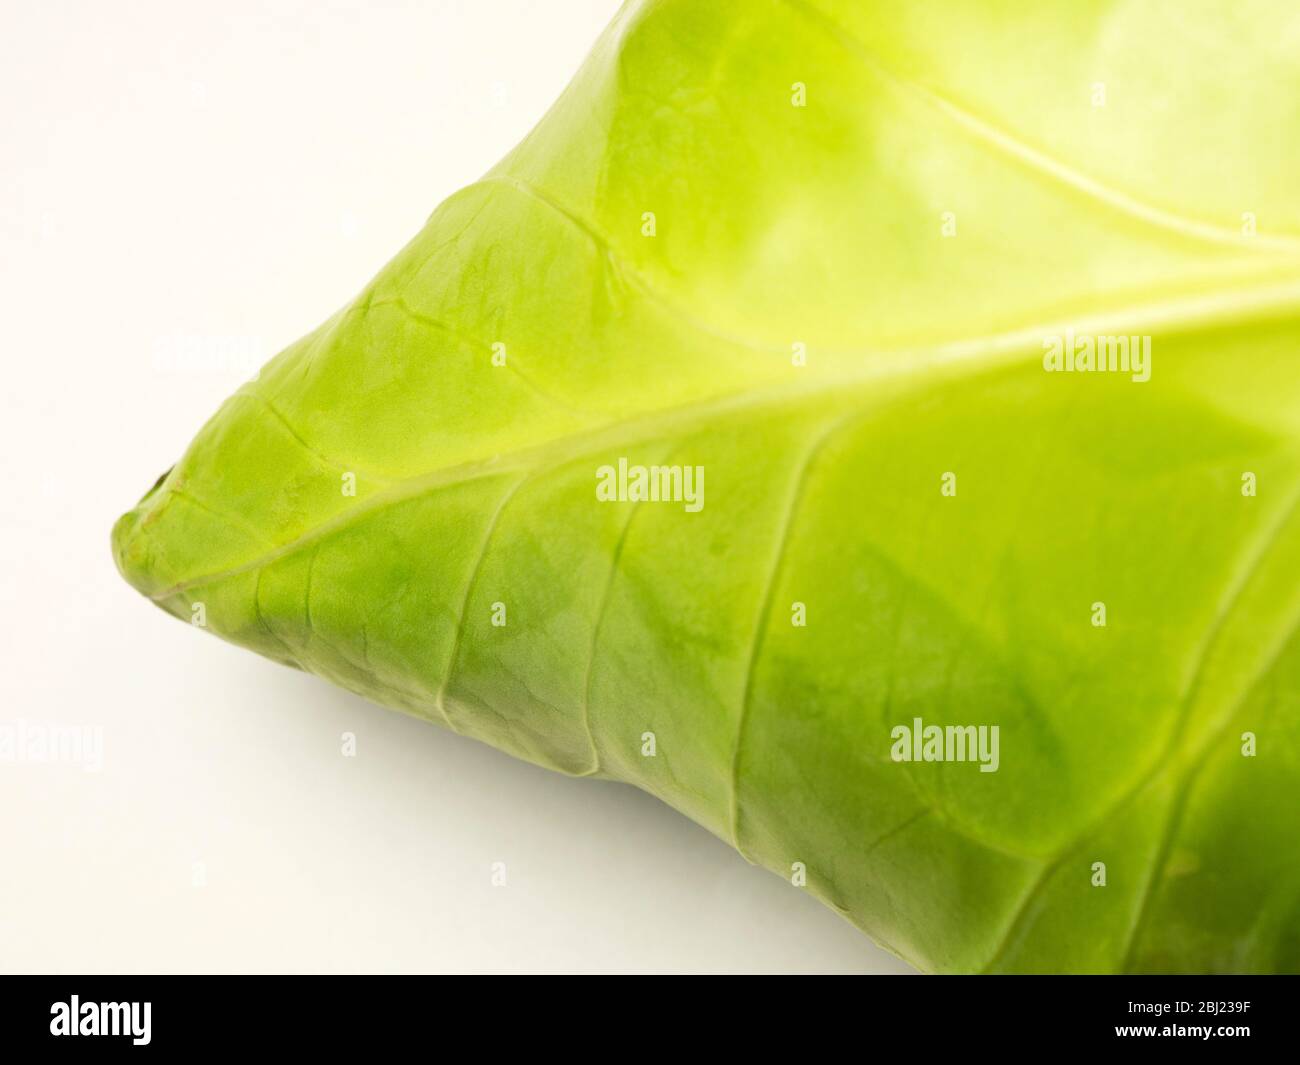 Repollo fresco y apuntado que muestra las venas de las hojas sobre un fondo blanco Foto de stock